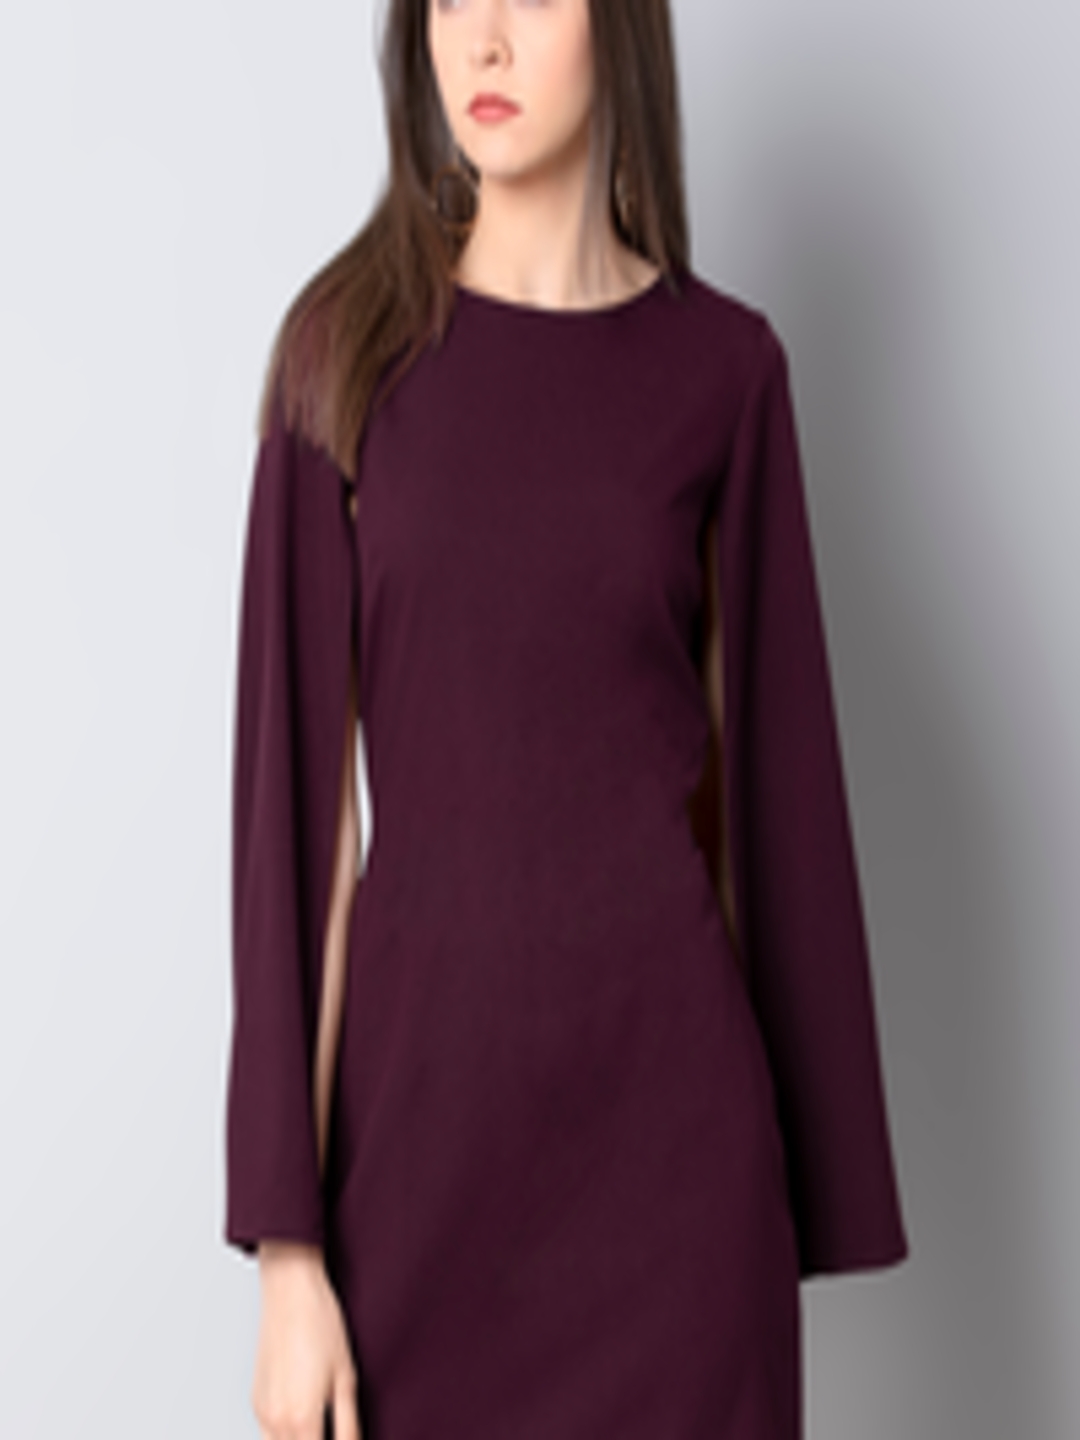 Buy FabAlley Women Solid Purple Sheath Dress - Dresses for Women ...